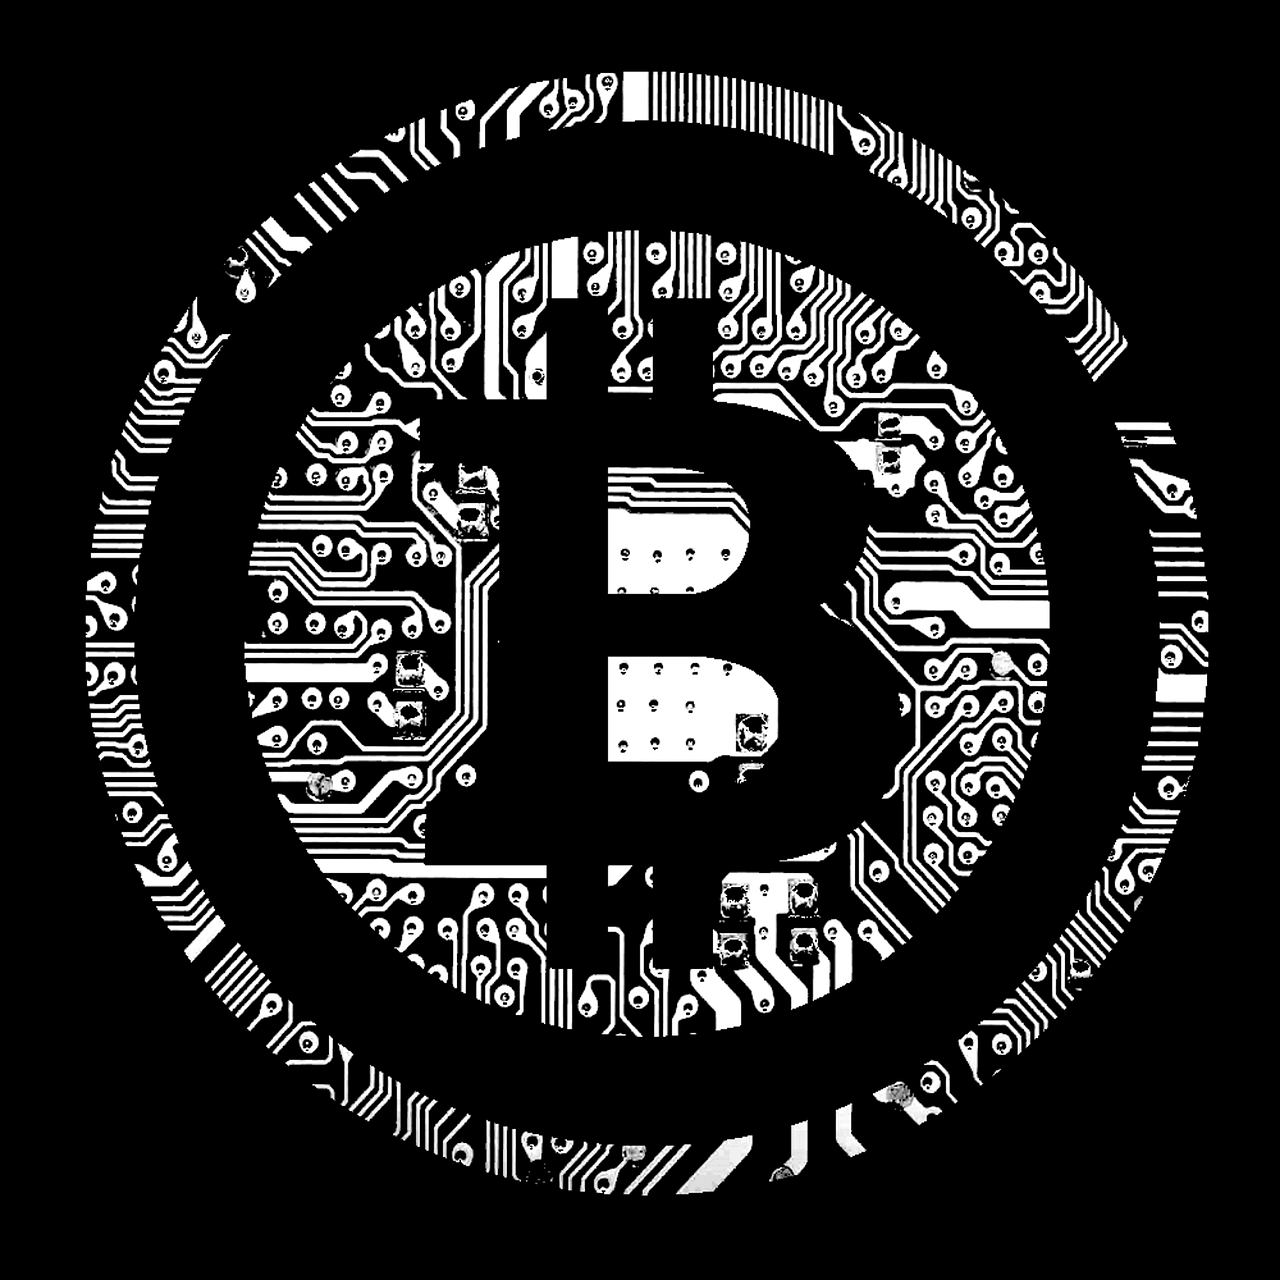 Bitcoin,btc,cryptography,cryptomoney,coin - free image from needpix.com